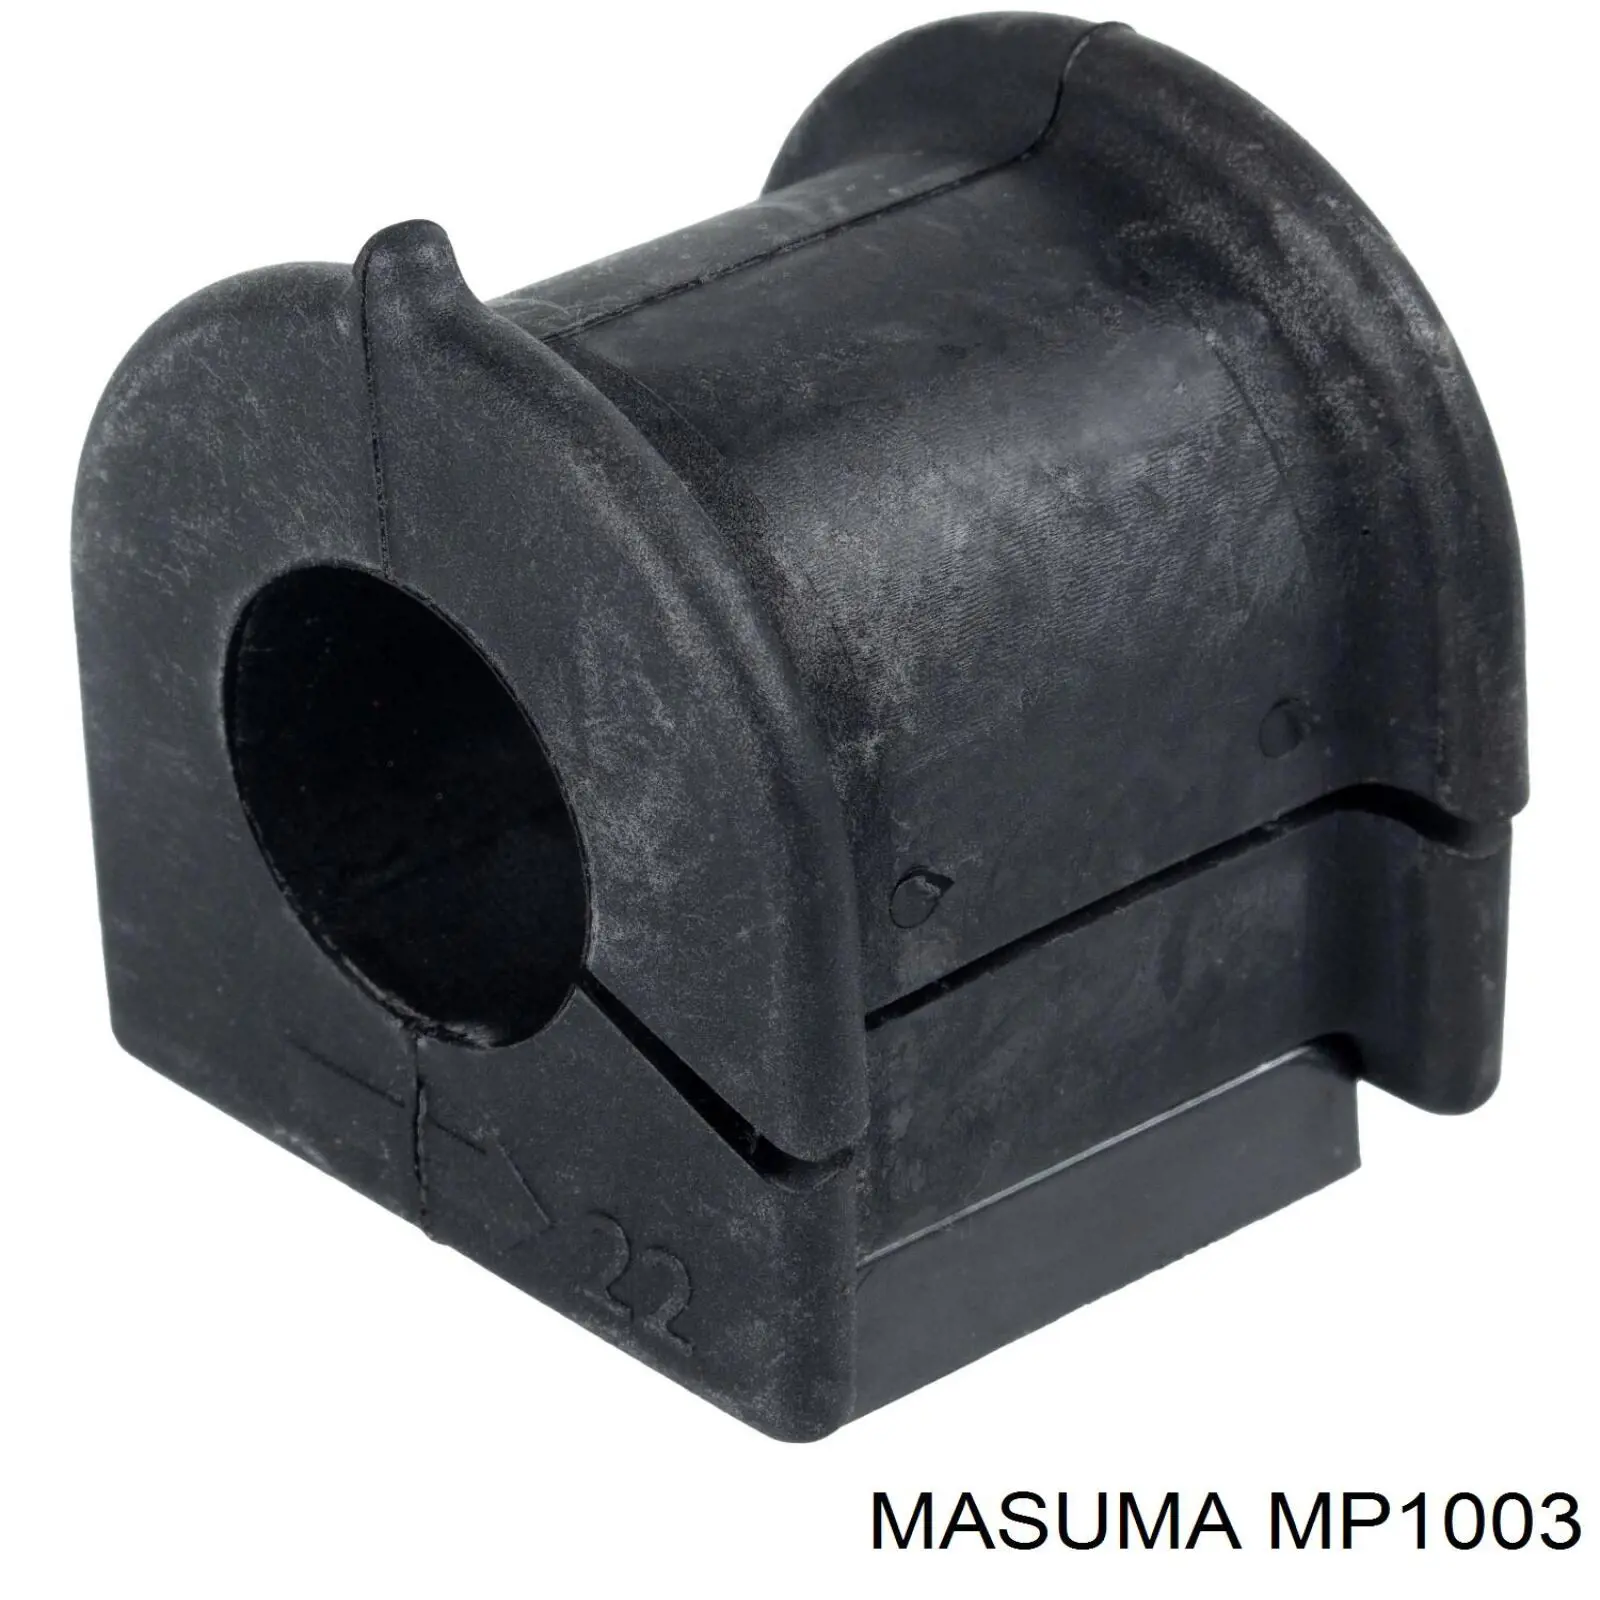 MP1003 Masuma bucha de estabilizador dianteiro